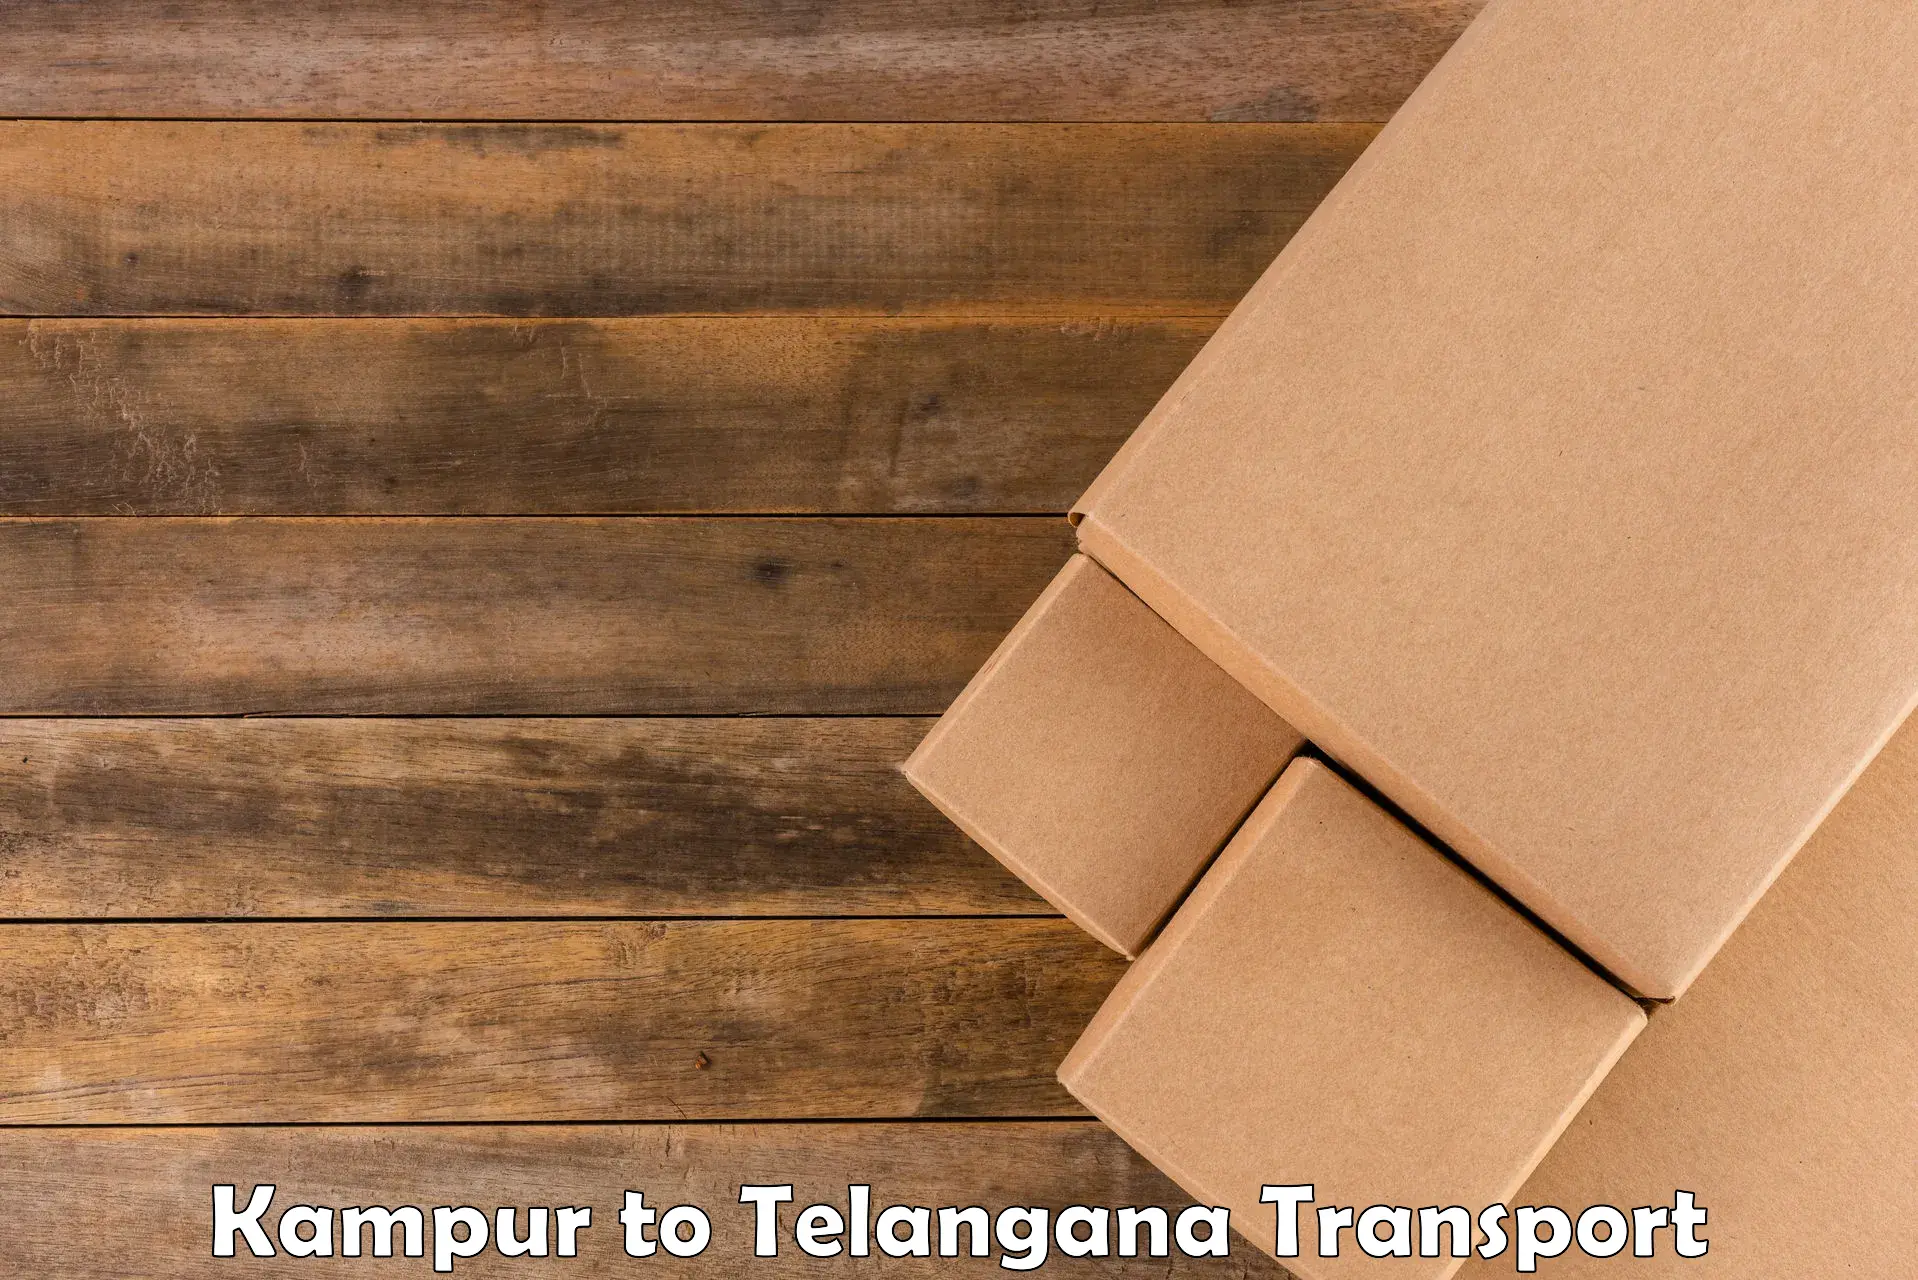 Furniture transport service Kampur to Rayaparthi